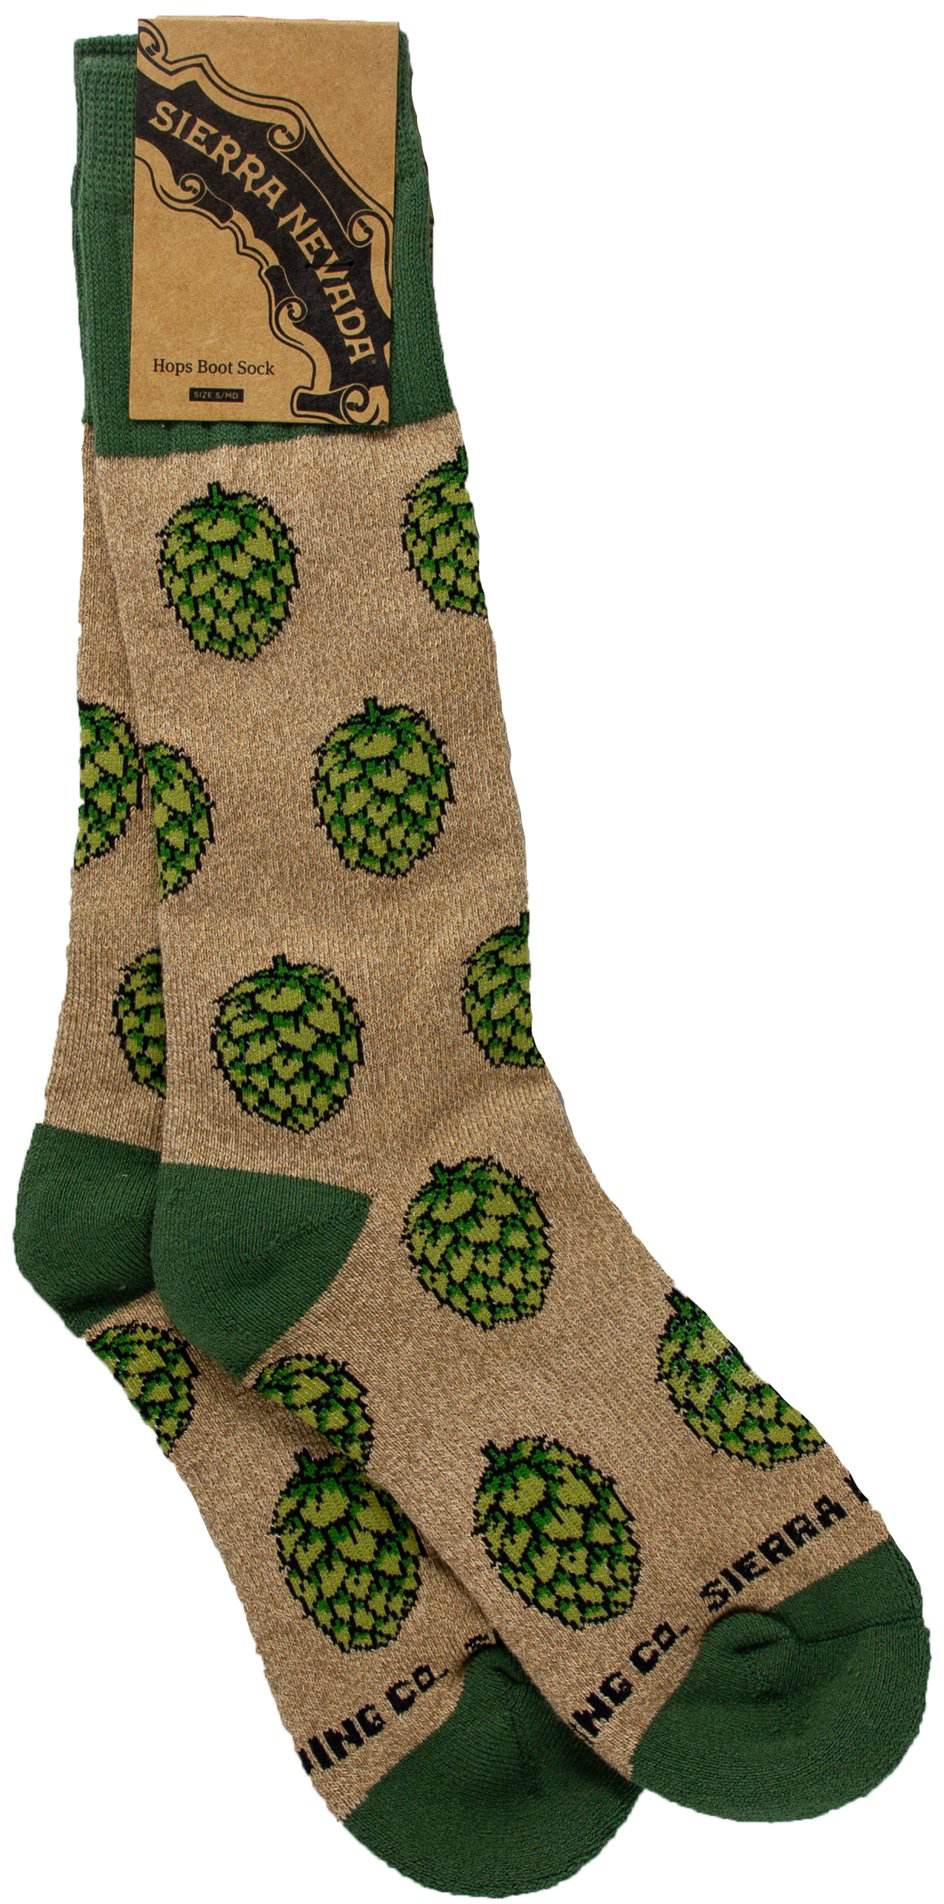 Hops & Beer Socks - Women's Novelty Socks